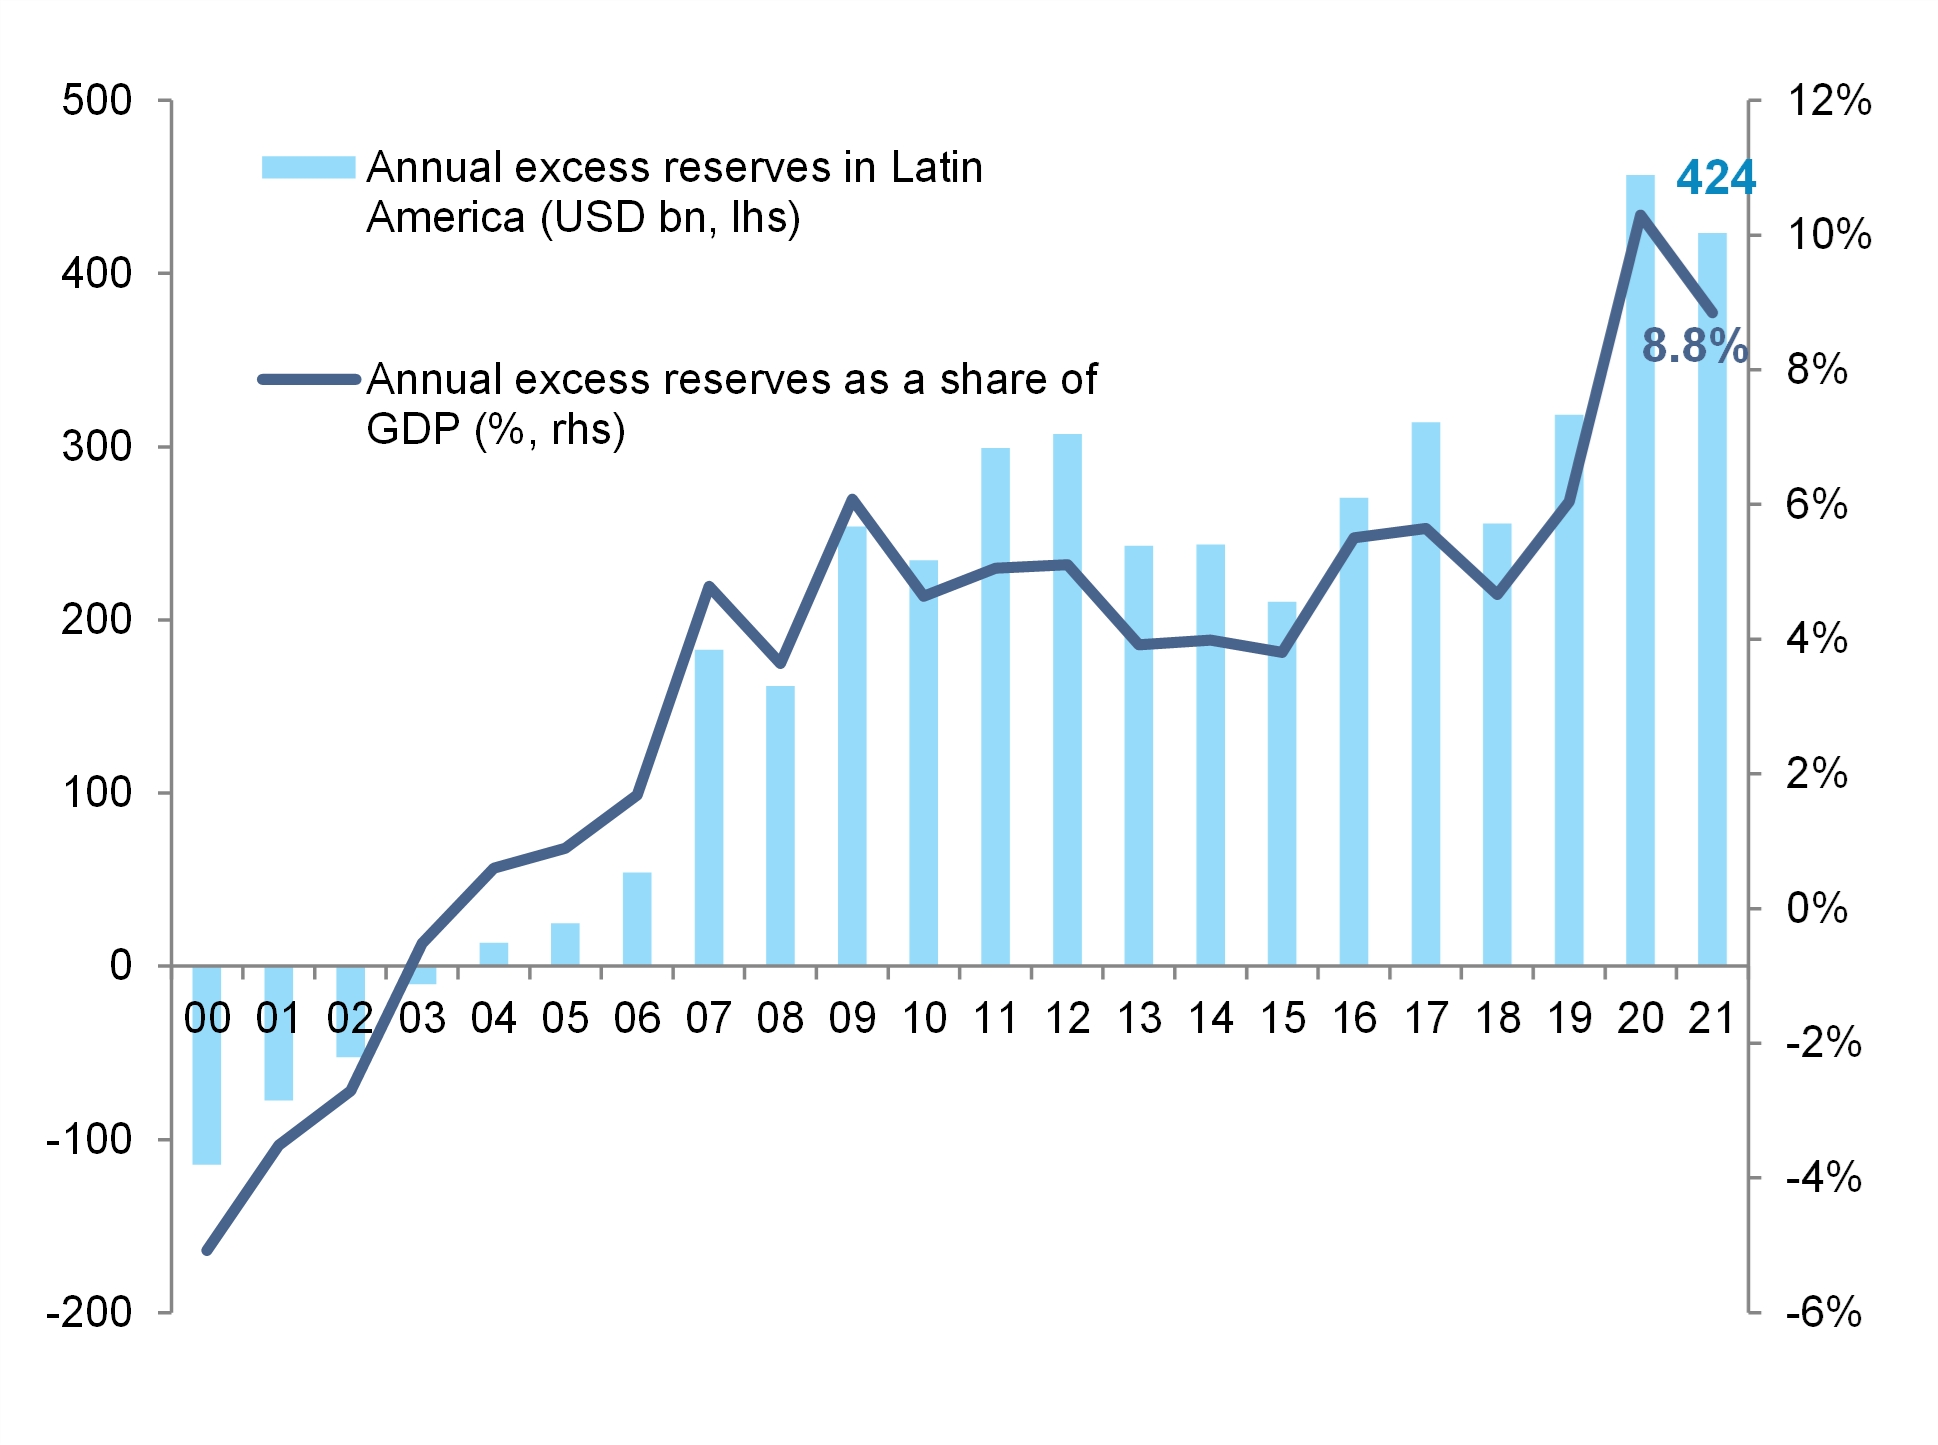 Cenário base - “Excesso” de reservas cambiais na América Latina (USD e % do PIB) / Fontes: National Statistics, IHS Data Insight, Allianz Research / Divulgação